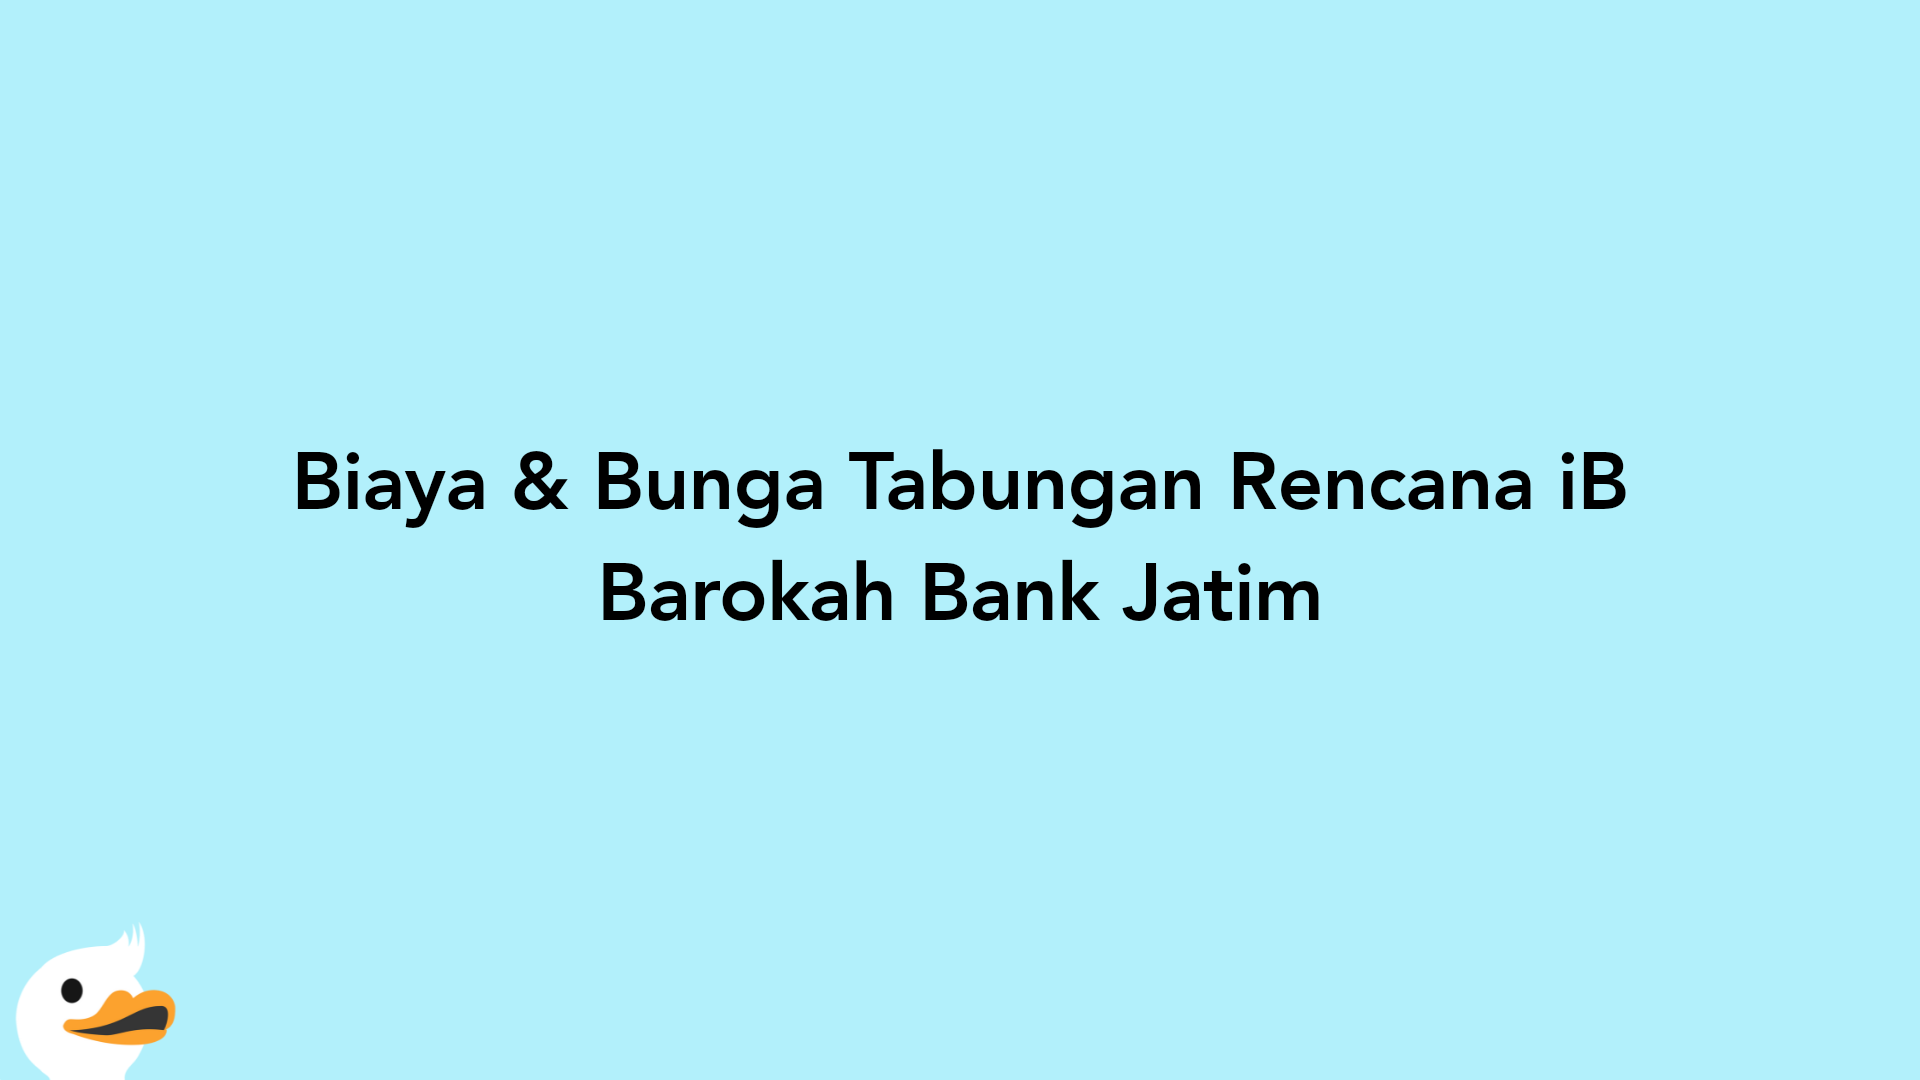 Biaya & Bunga Tabungan Rencana iB Barokah Bank Jatim